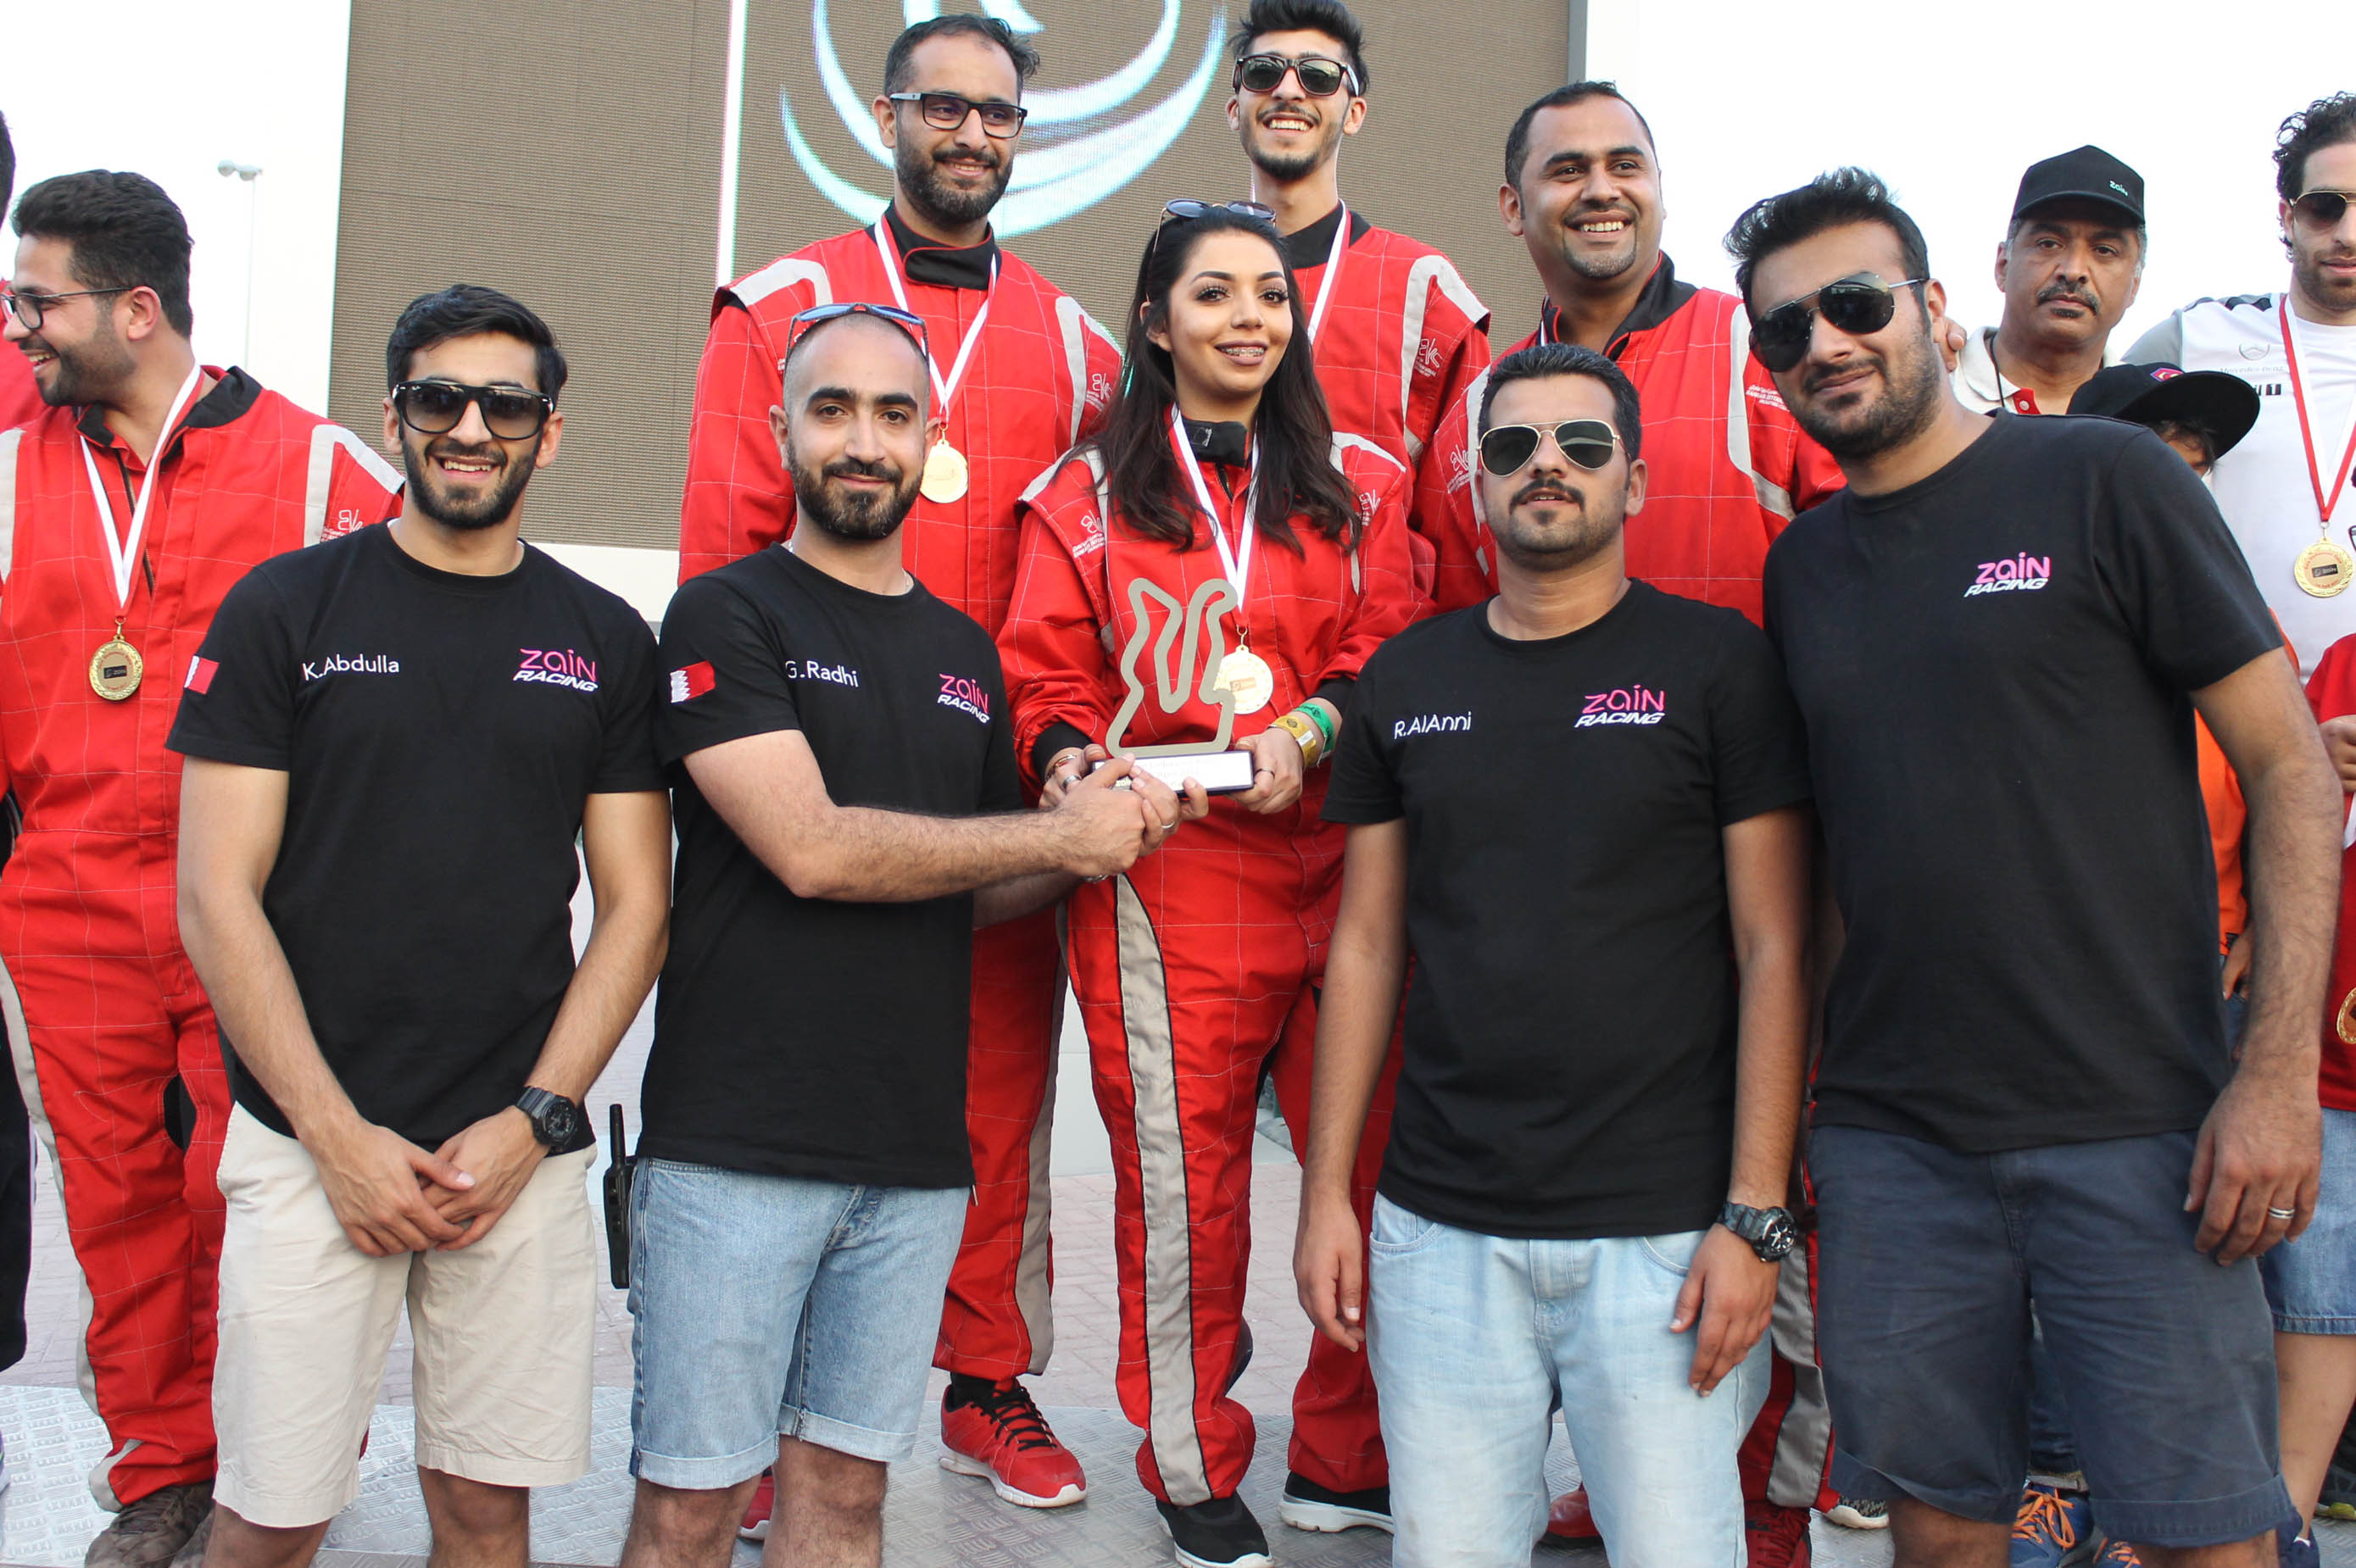 Zain Bahrain teams compete in annual karting race at Bahrain ...